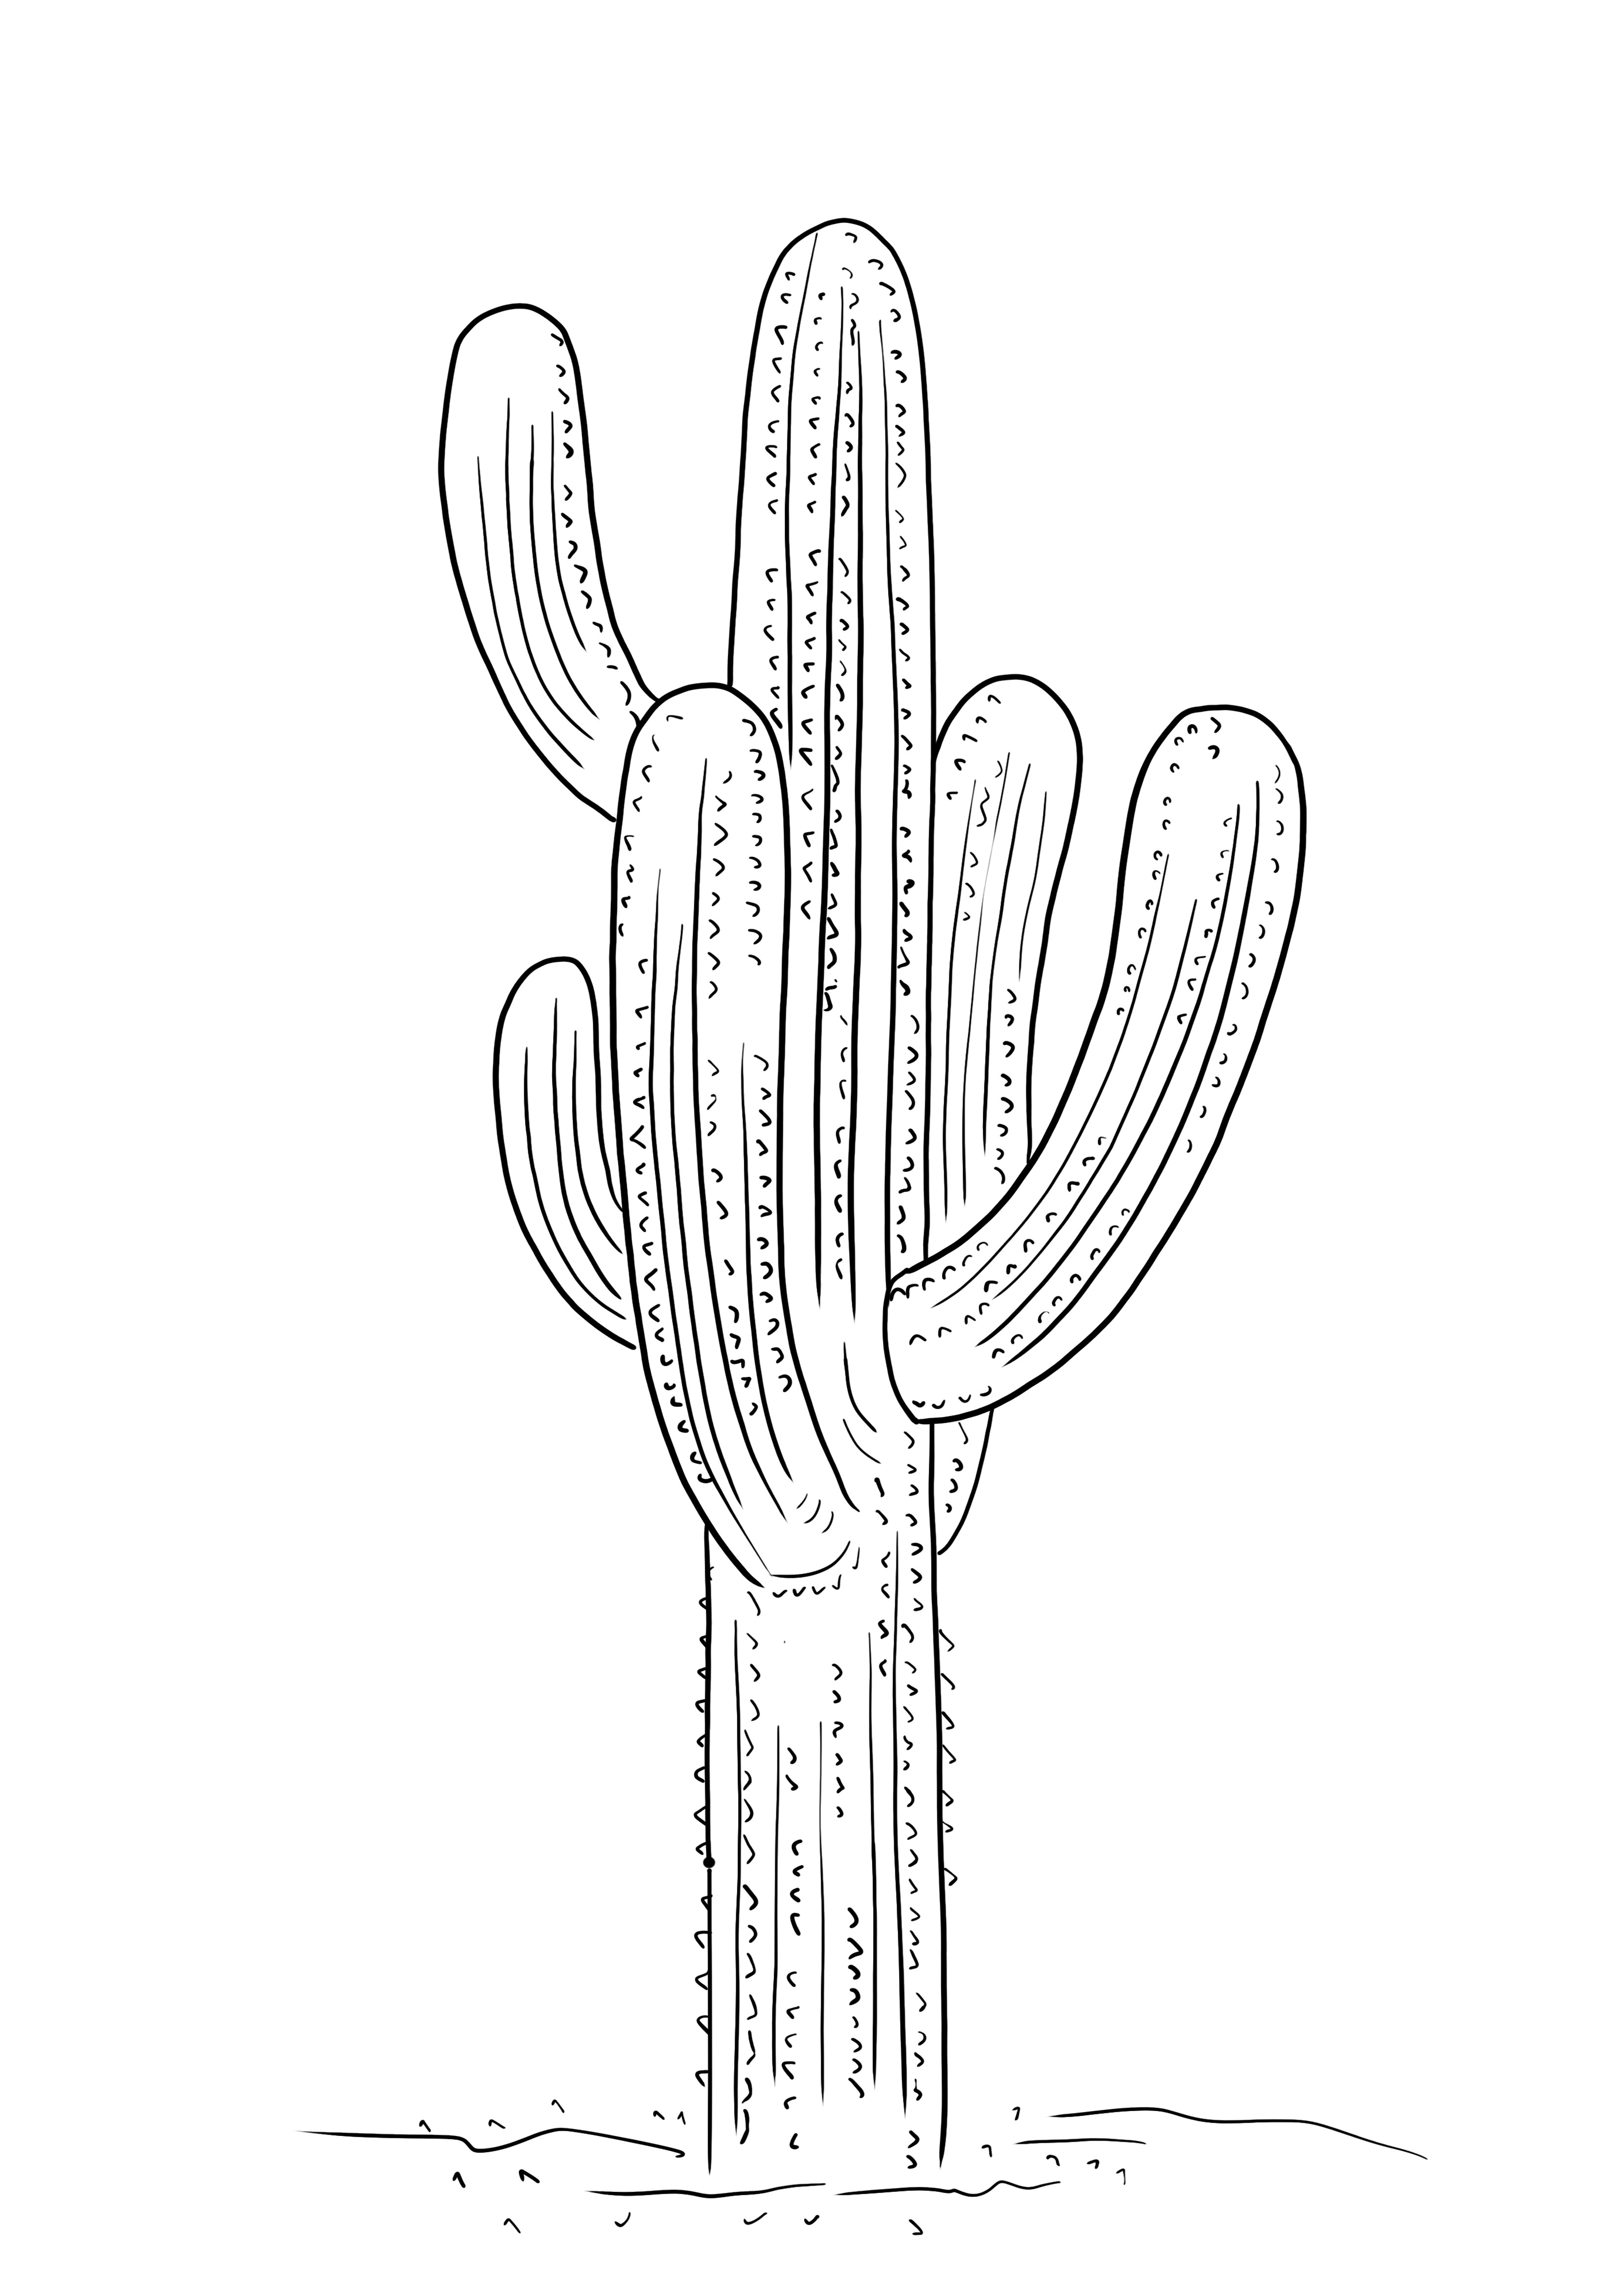 Kaktus Saguaro untuk dicetak gratis untuk anak-anak